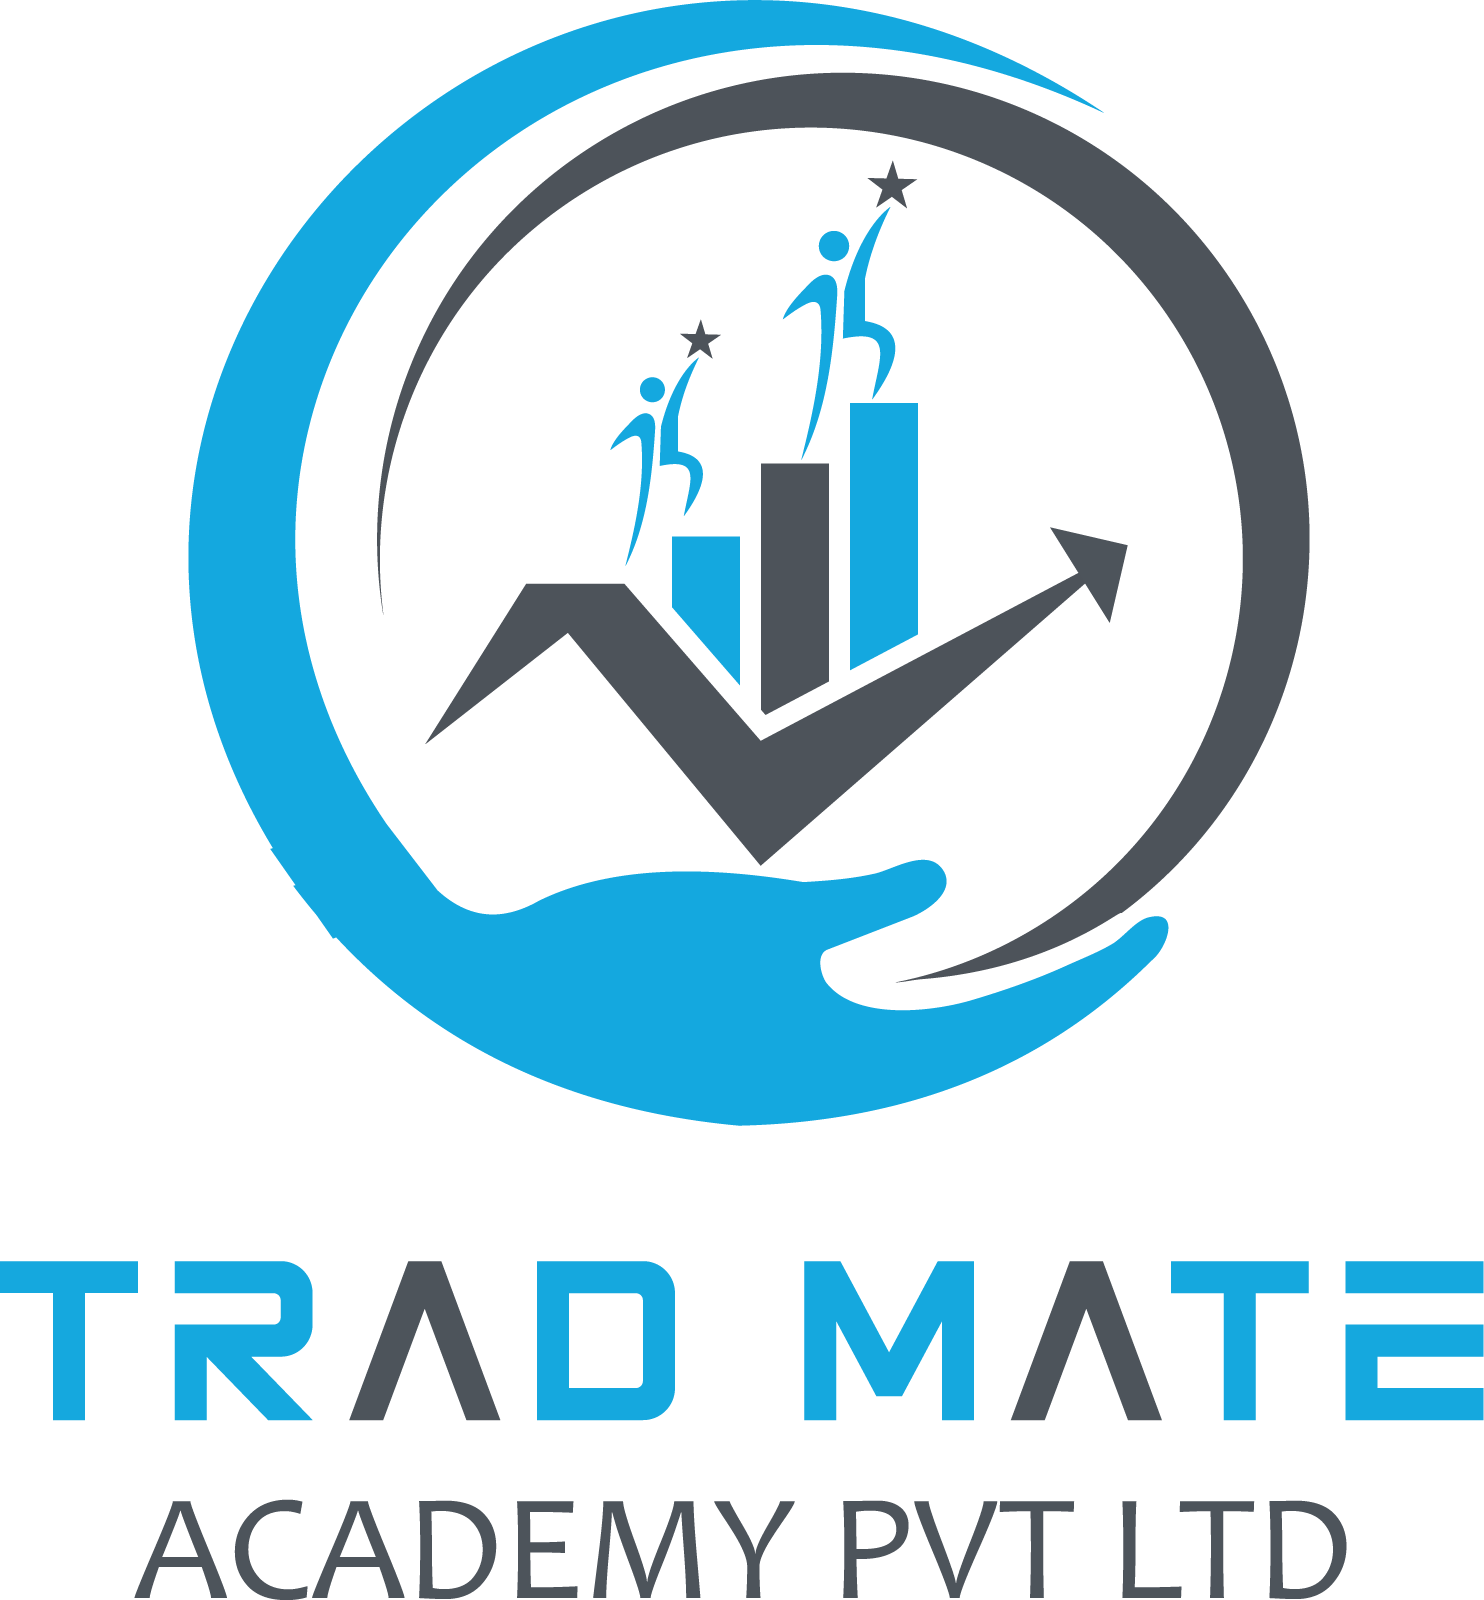 TrademateAcademy